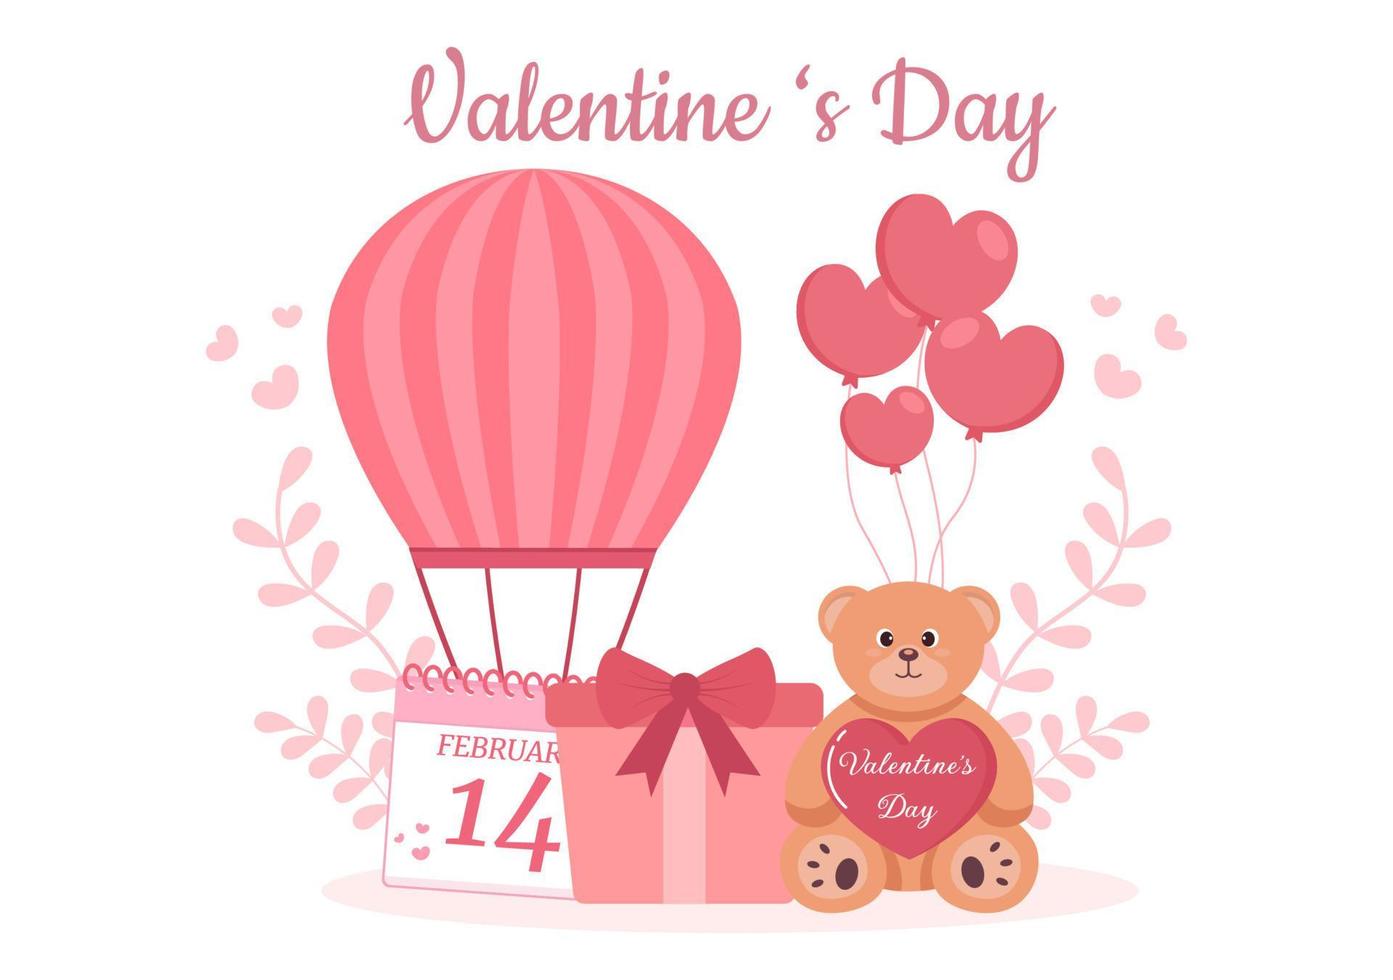 flache designillustration des glücklichen valentinstages, die am 17. februar mit teddybär, luftballon und geschenk für liebesgrußkarte gedacht wird vektor